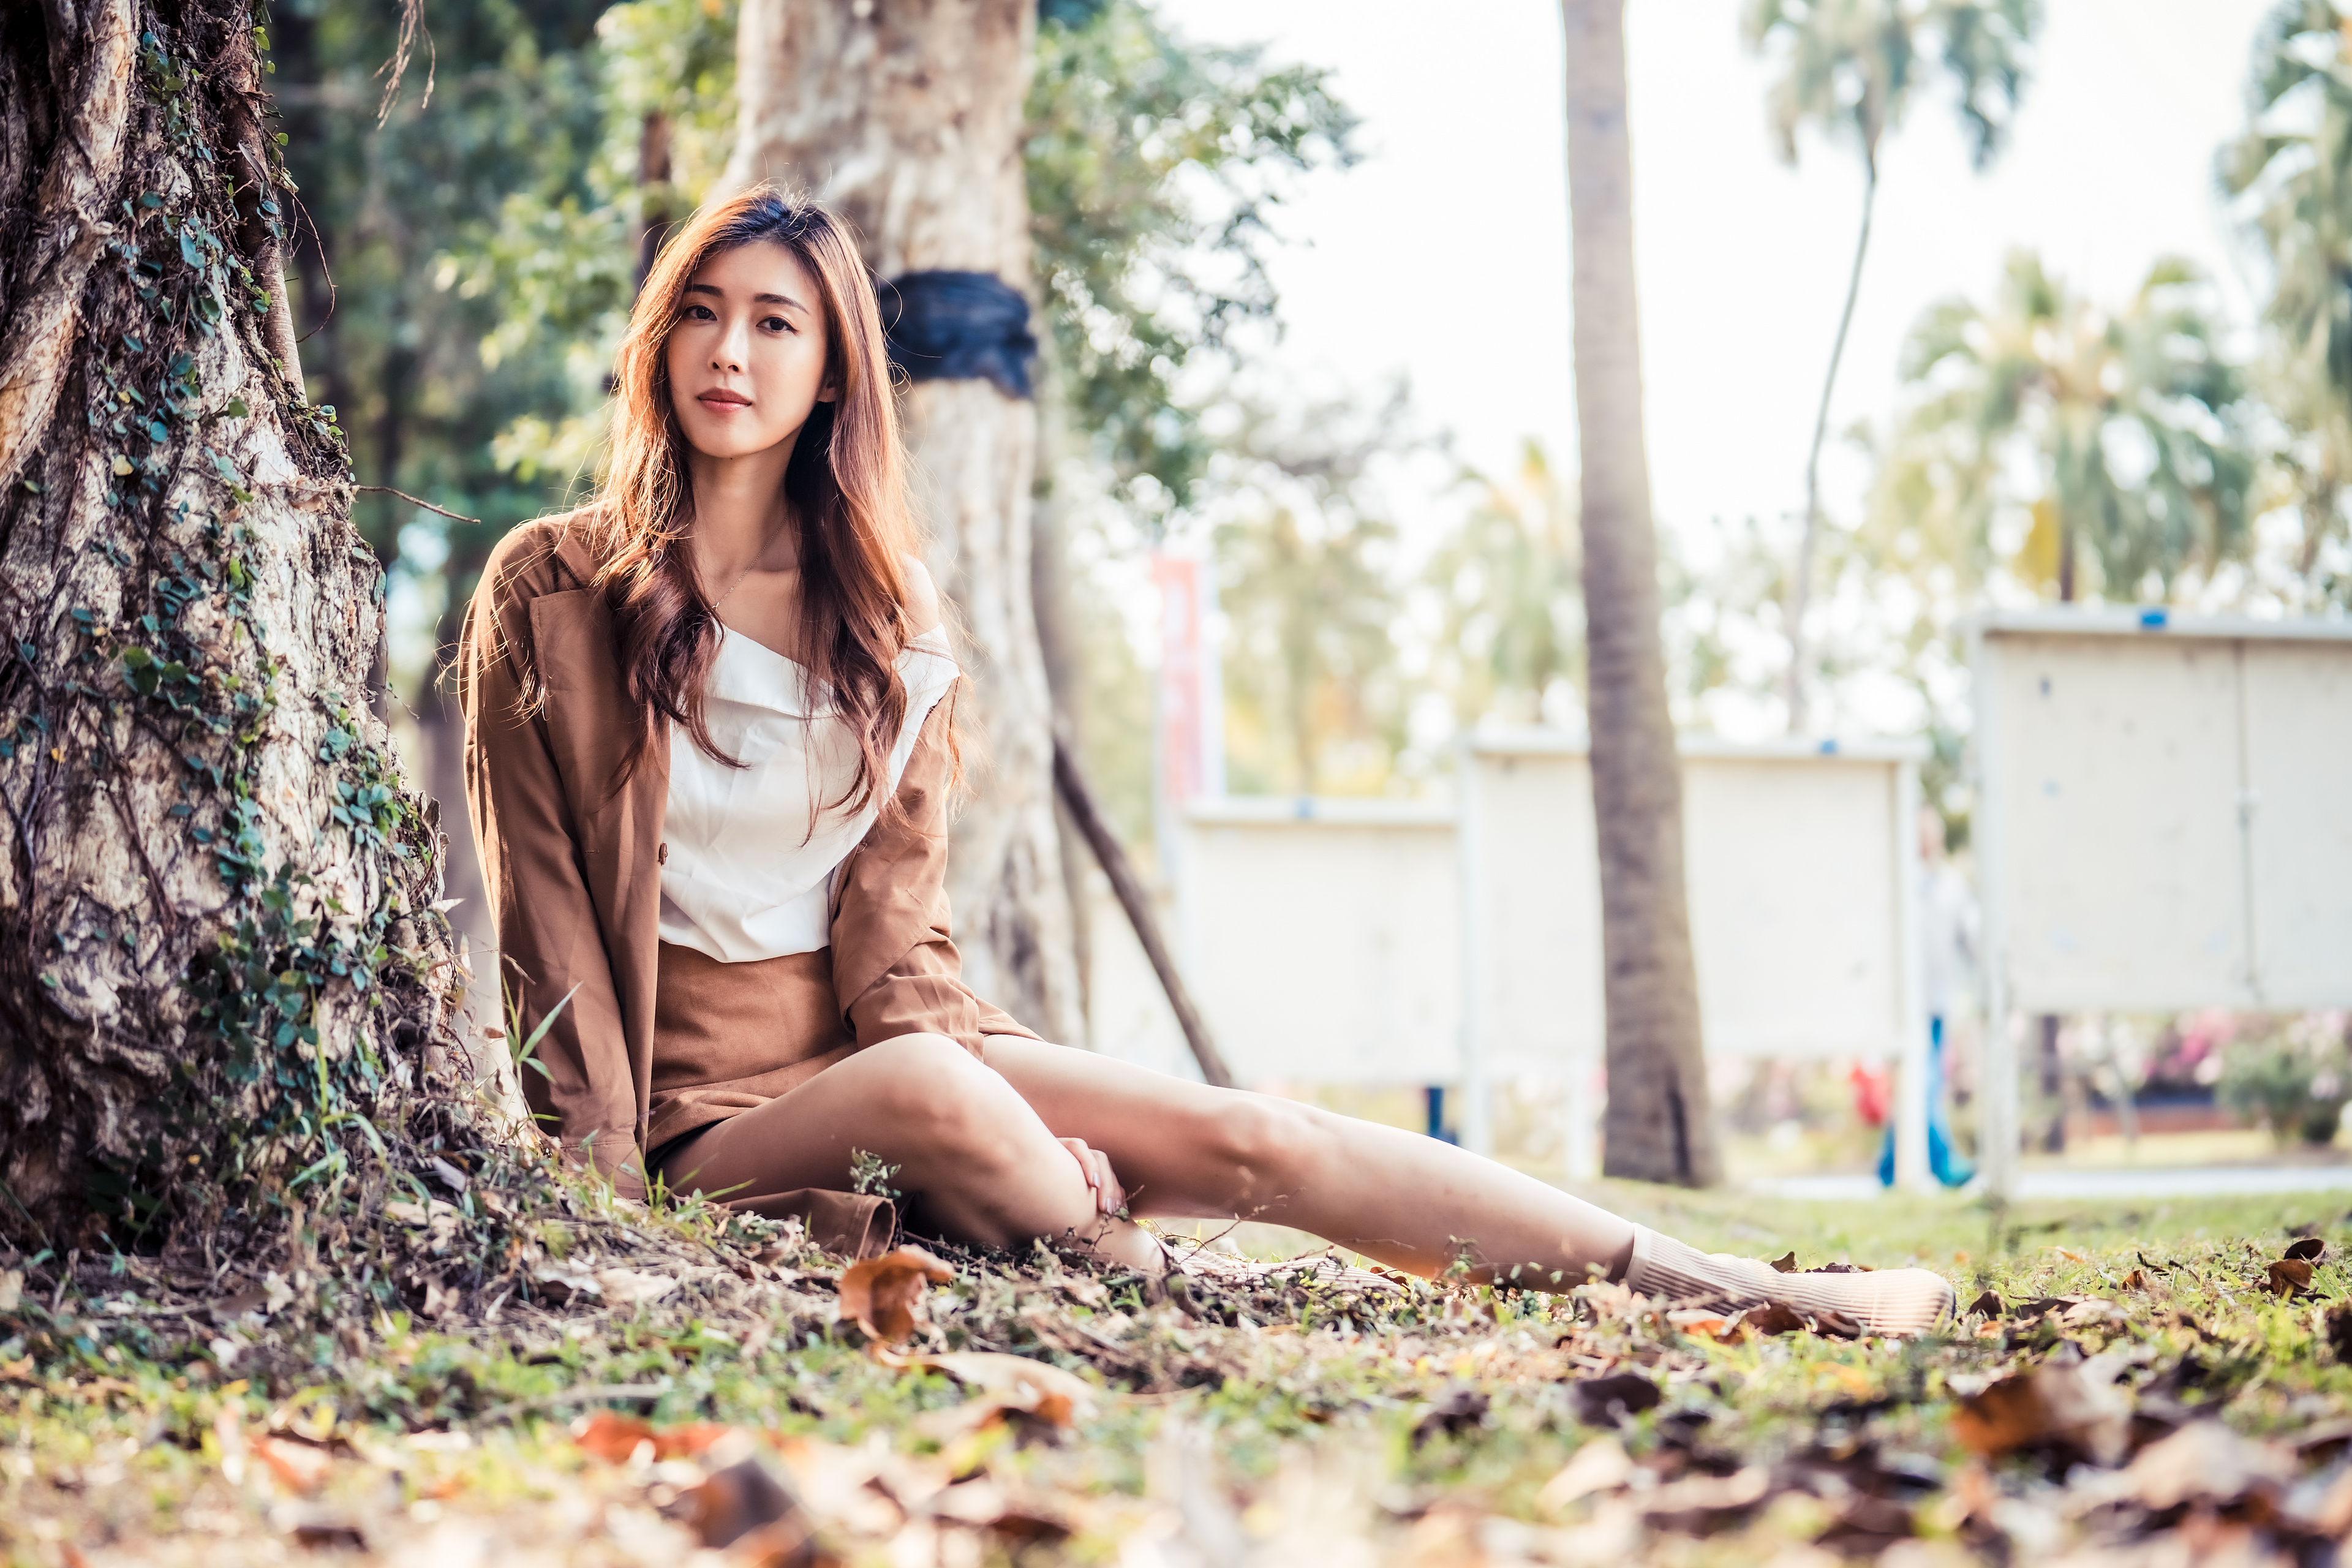 Asian Model Women Long Hair Brunette Women Outdoors Sitting Trees Leaves Depth Of Field Skirt Blouse 3840x2560